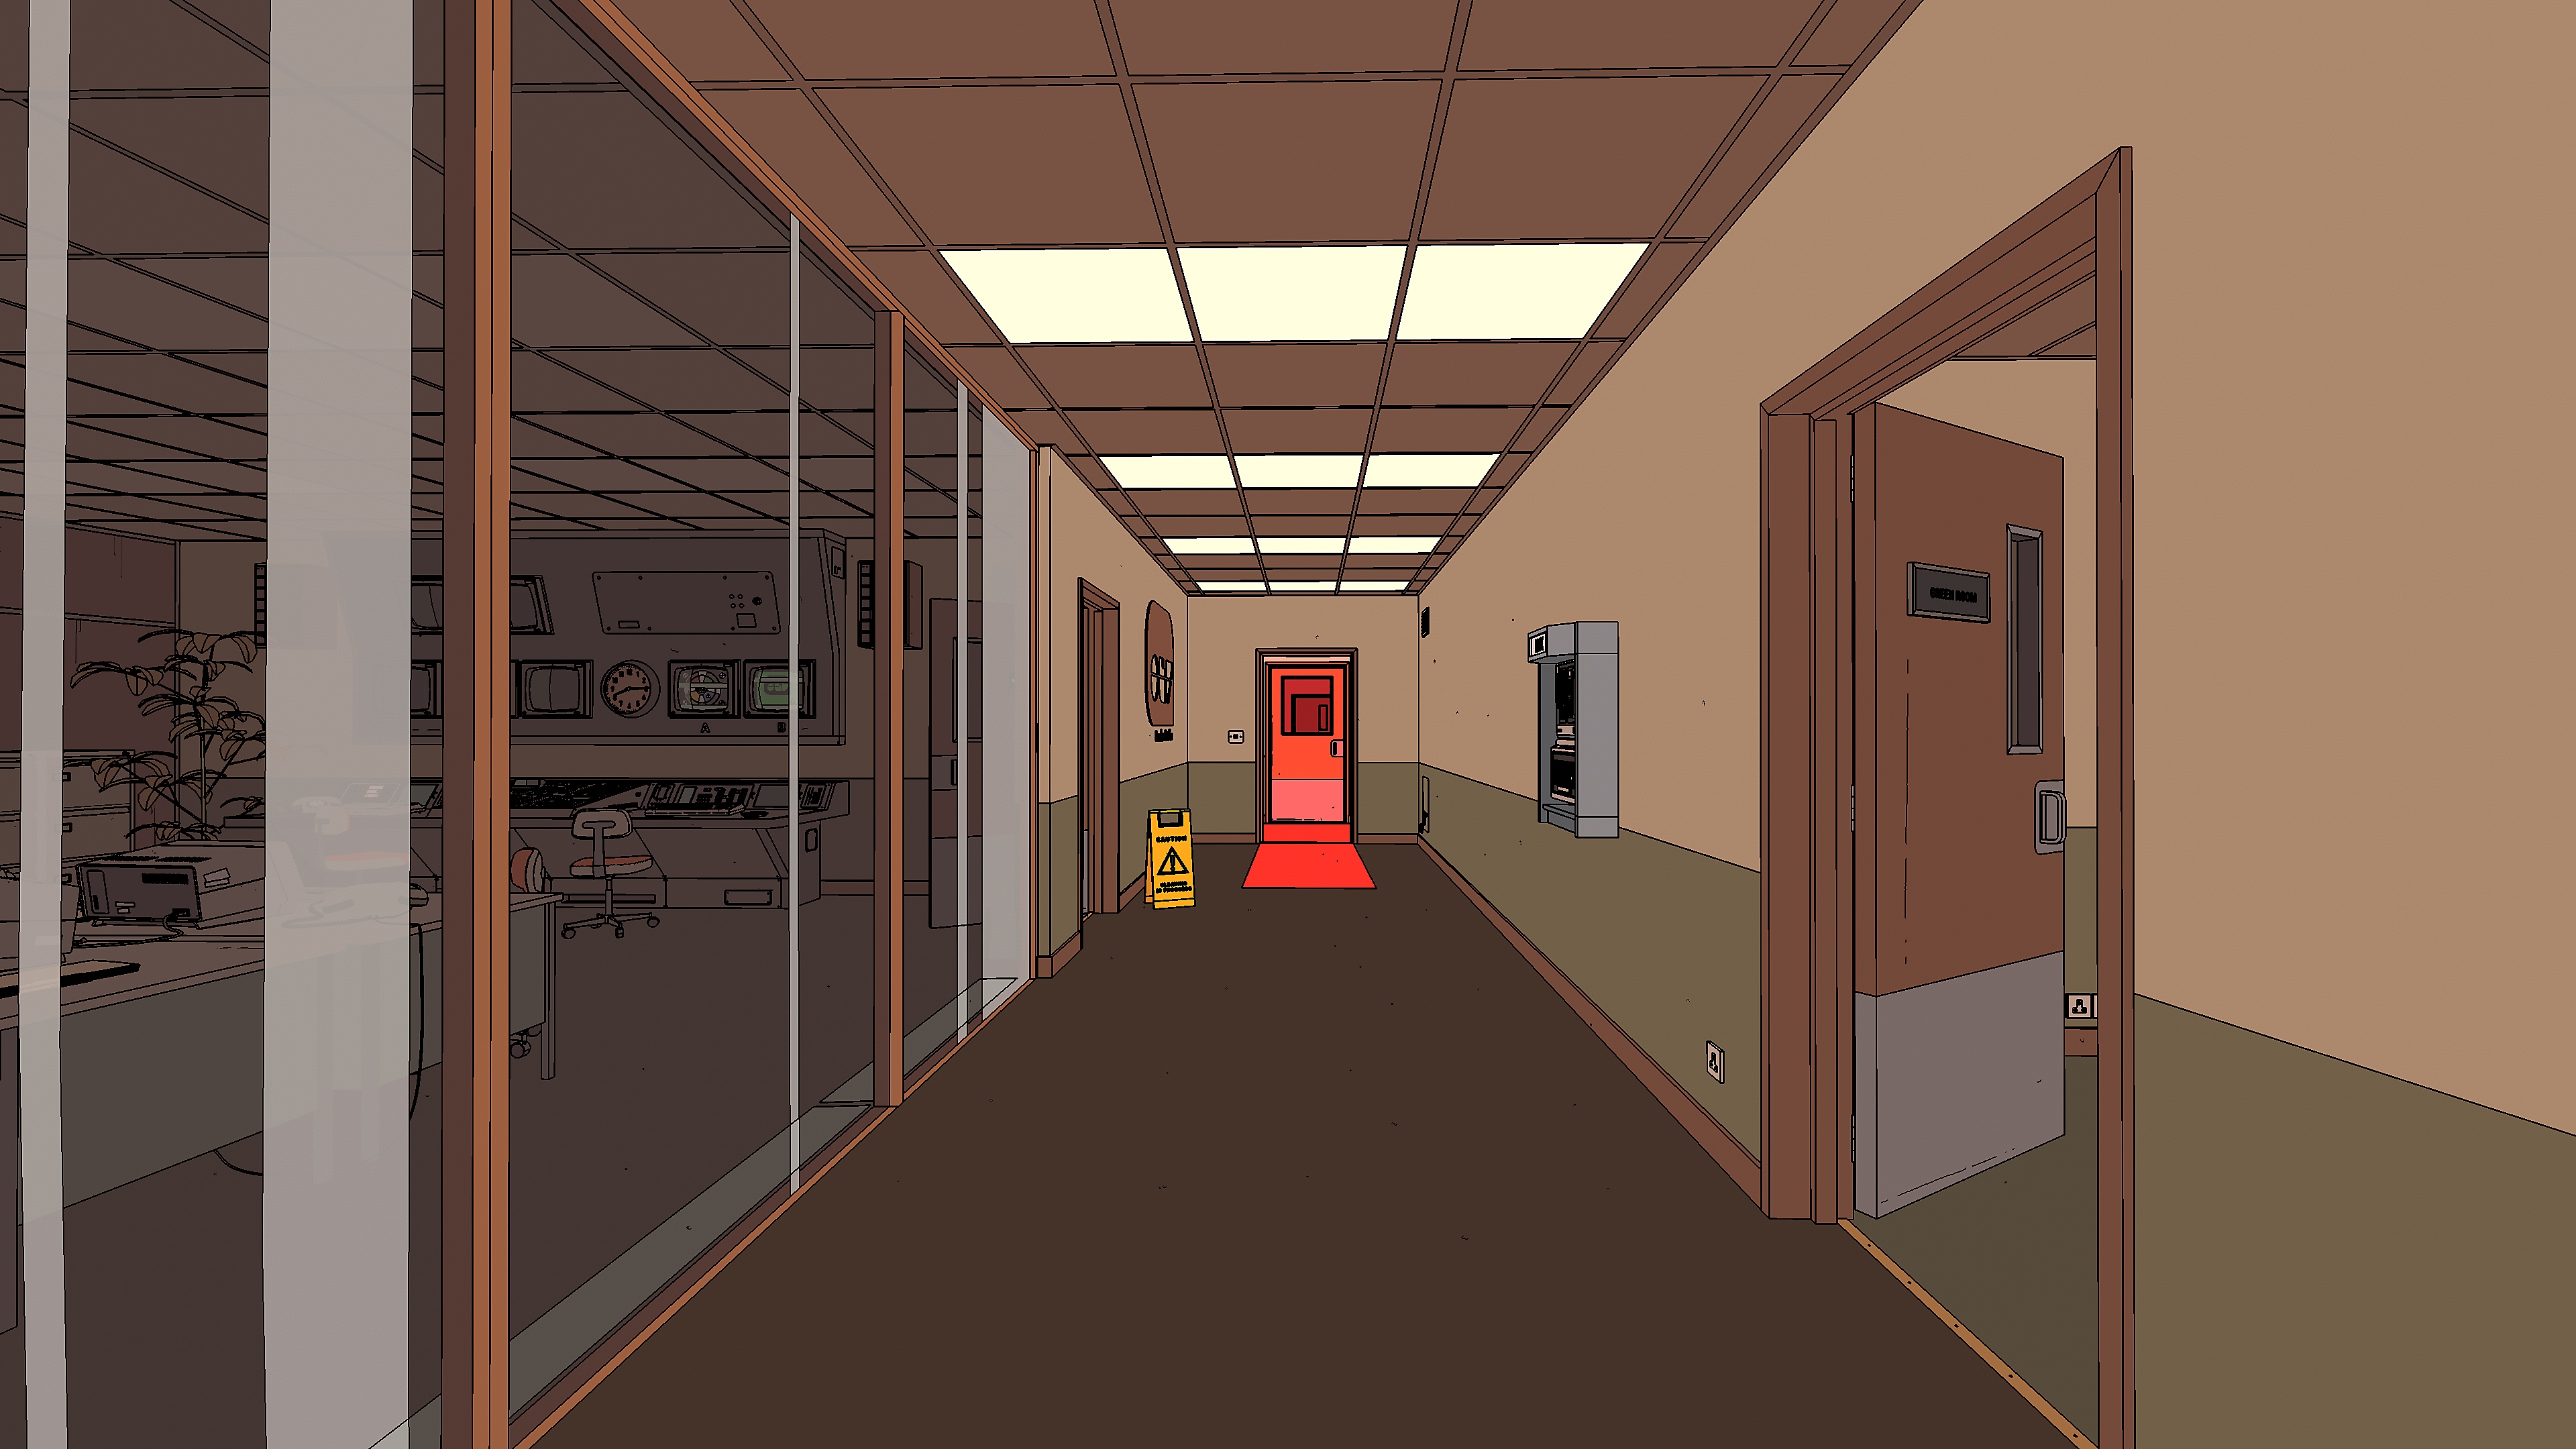 Rollerdrome ekran görüntüsü, kapıların kapalı olduğu bir koridoru gösteriyor